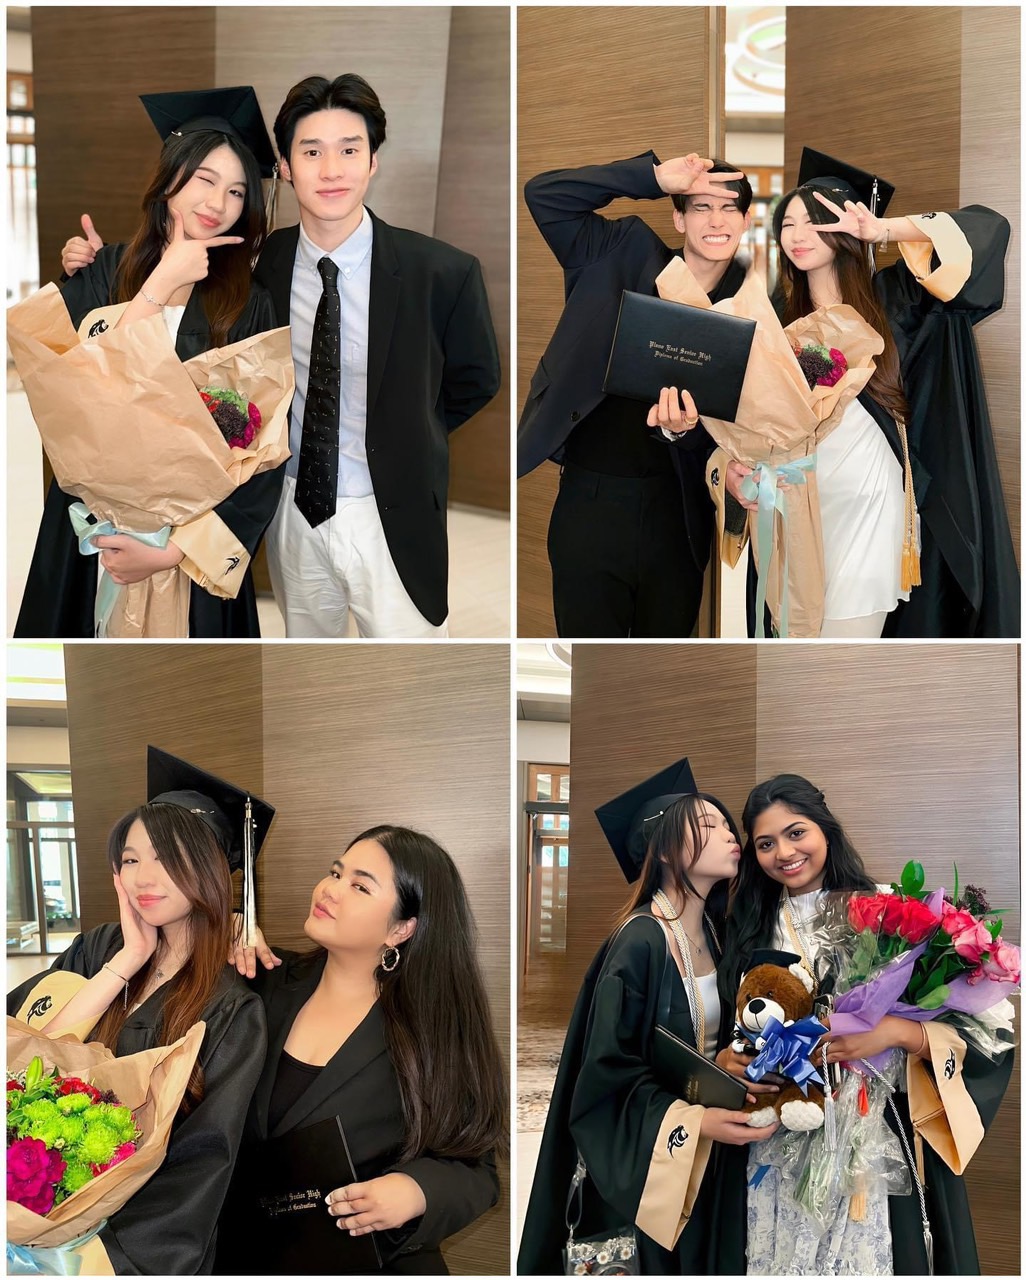 Hoa hậu nhí Ngọc Lan Vy được nam diễn viên đình đám Thái Lan bay sang Mỹ chúc mừng ngày đặc biệt - ảnh 2